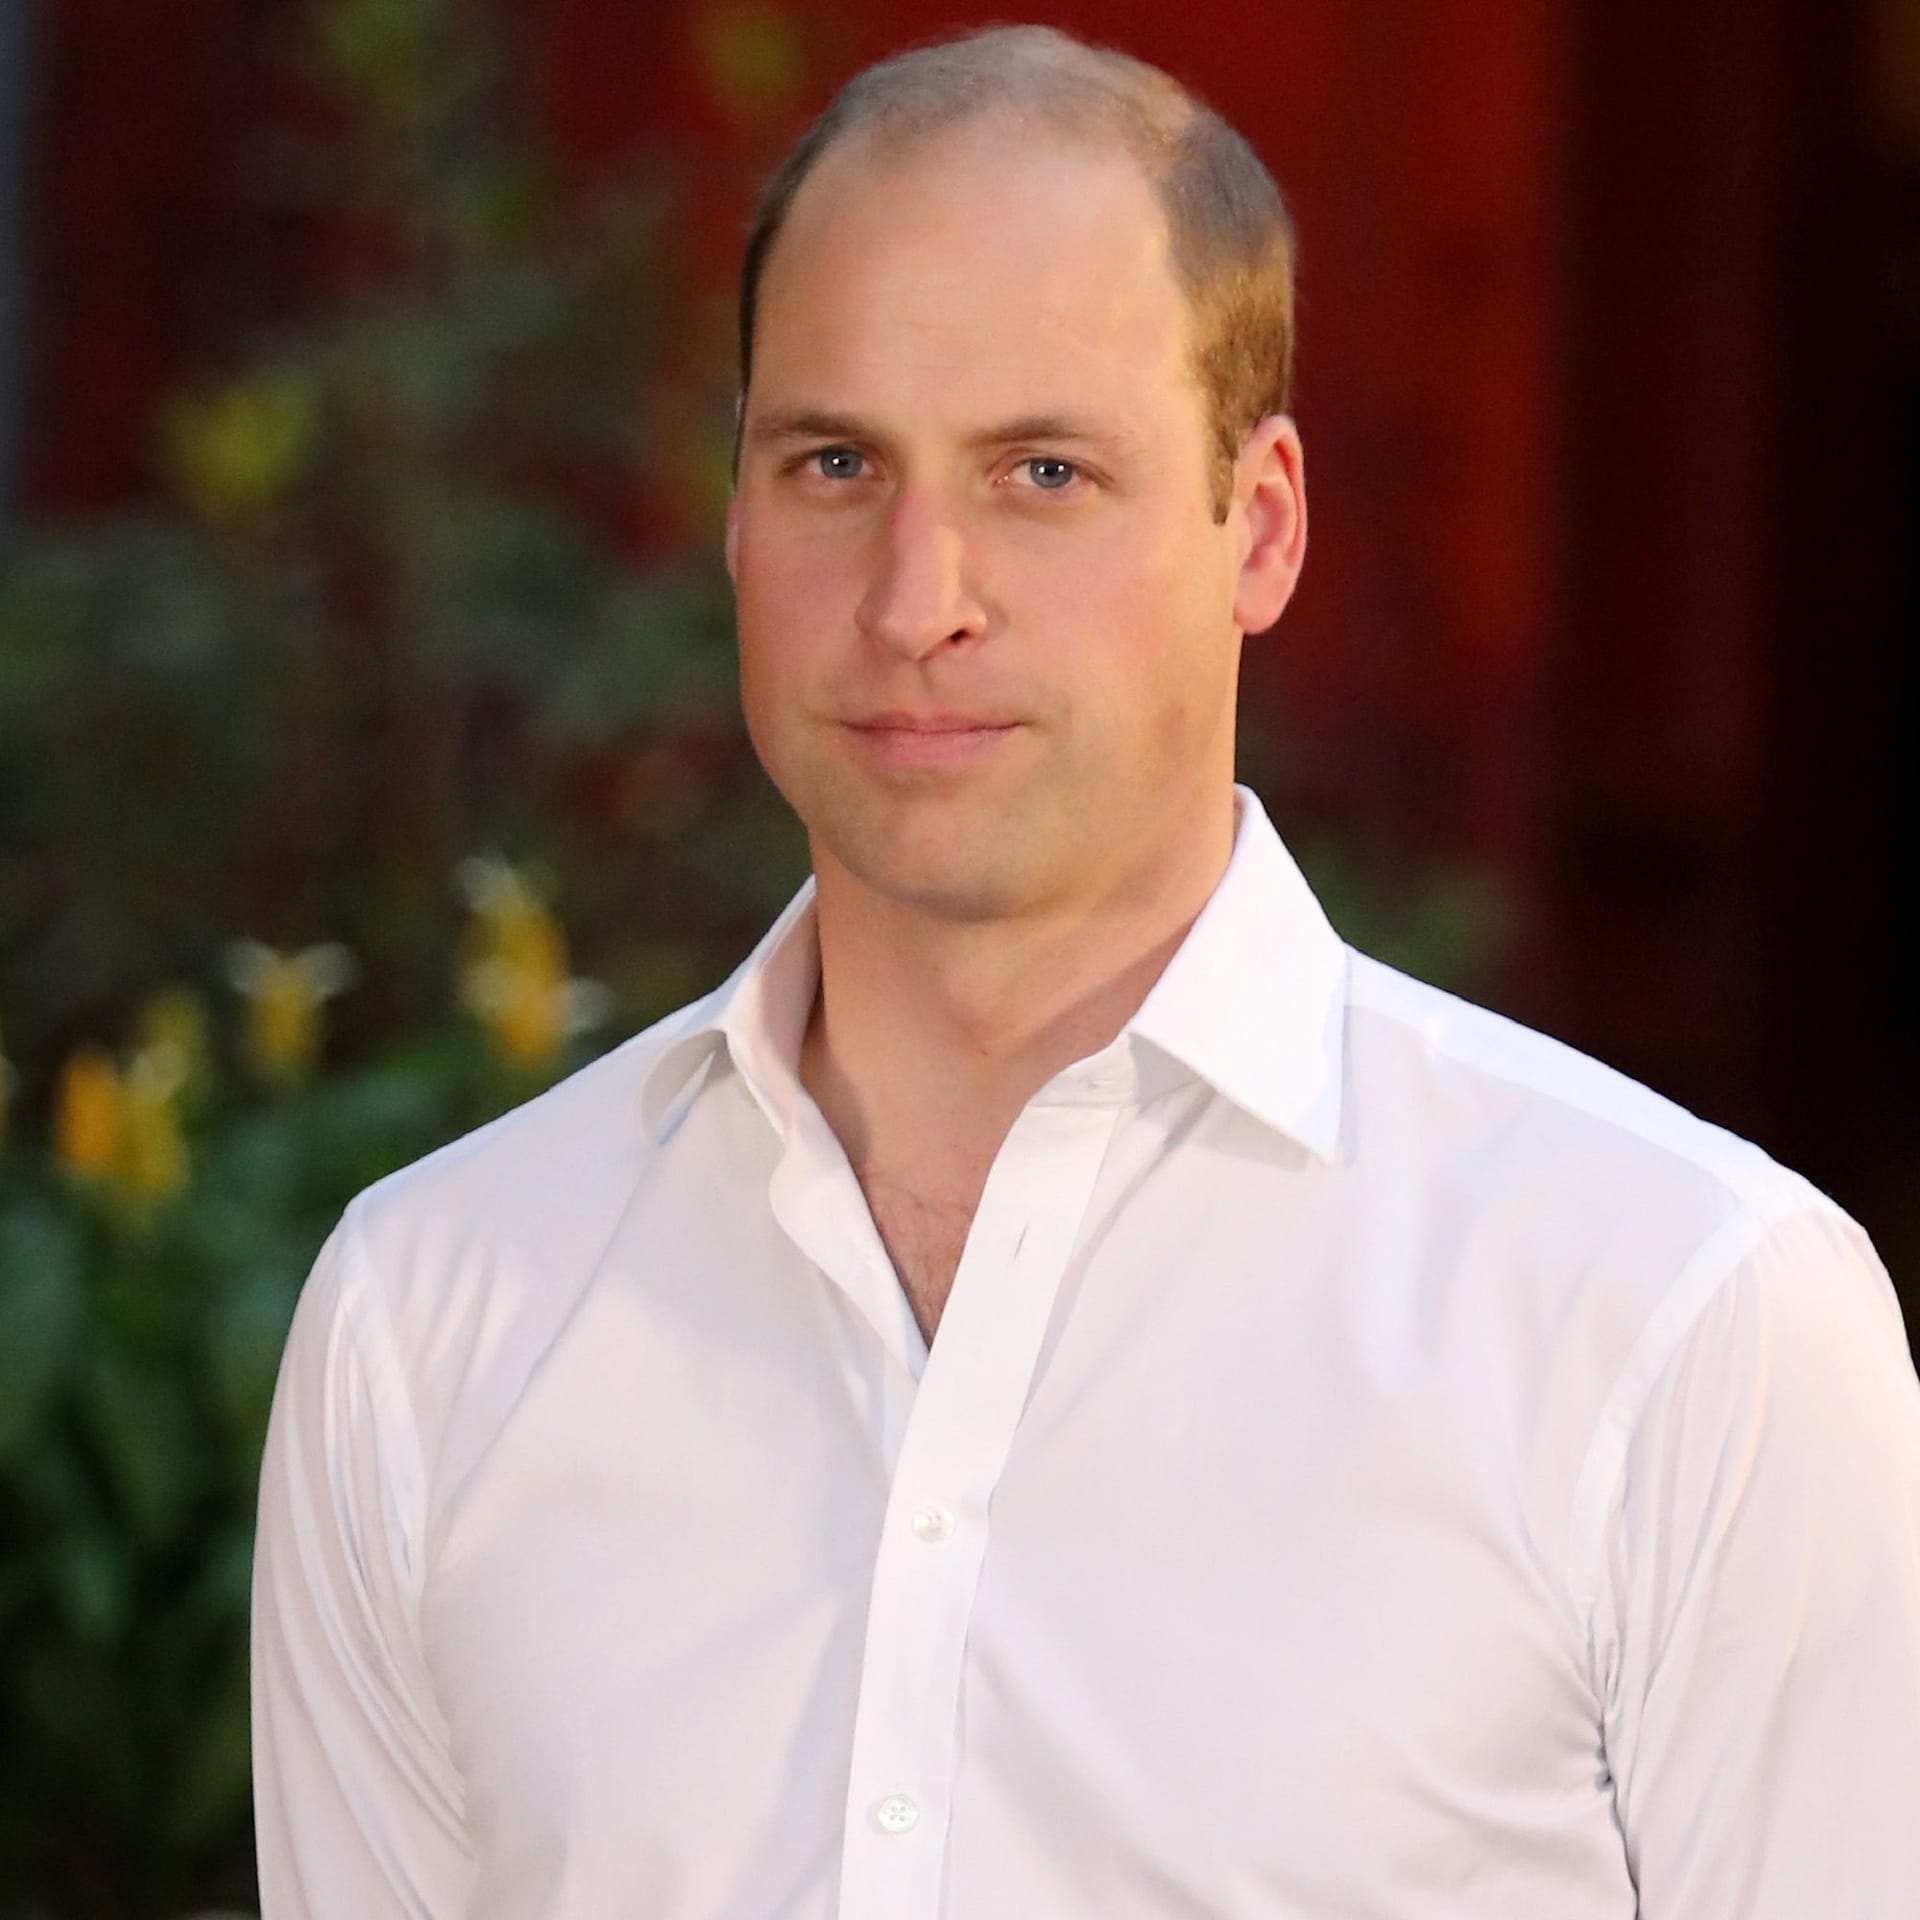 Prinz William: Er ist der Sohn von König Charles III. und Prinzessin Diana. Er ist der erste Thronfolger des Königs.